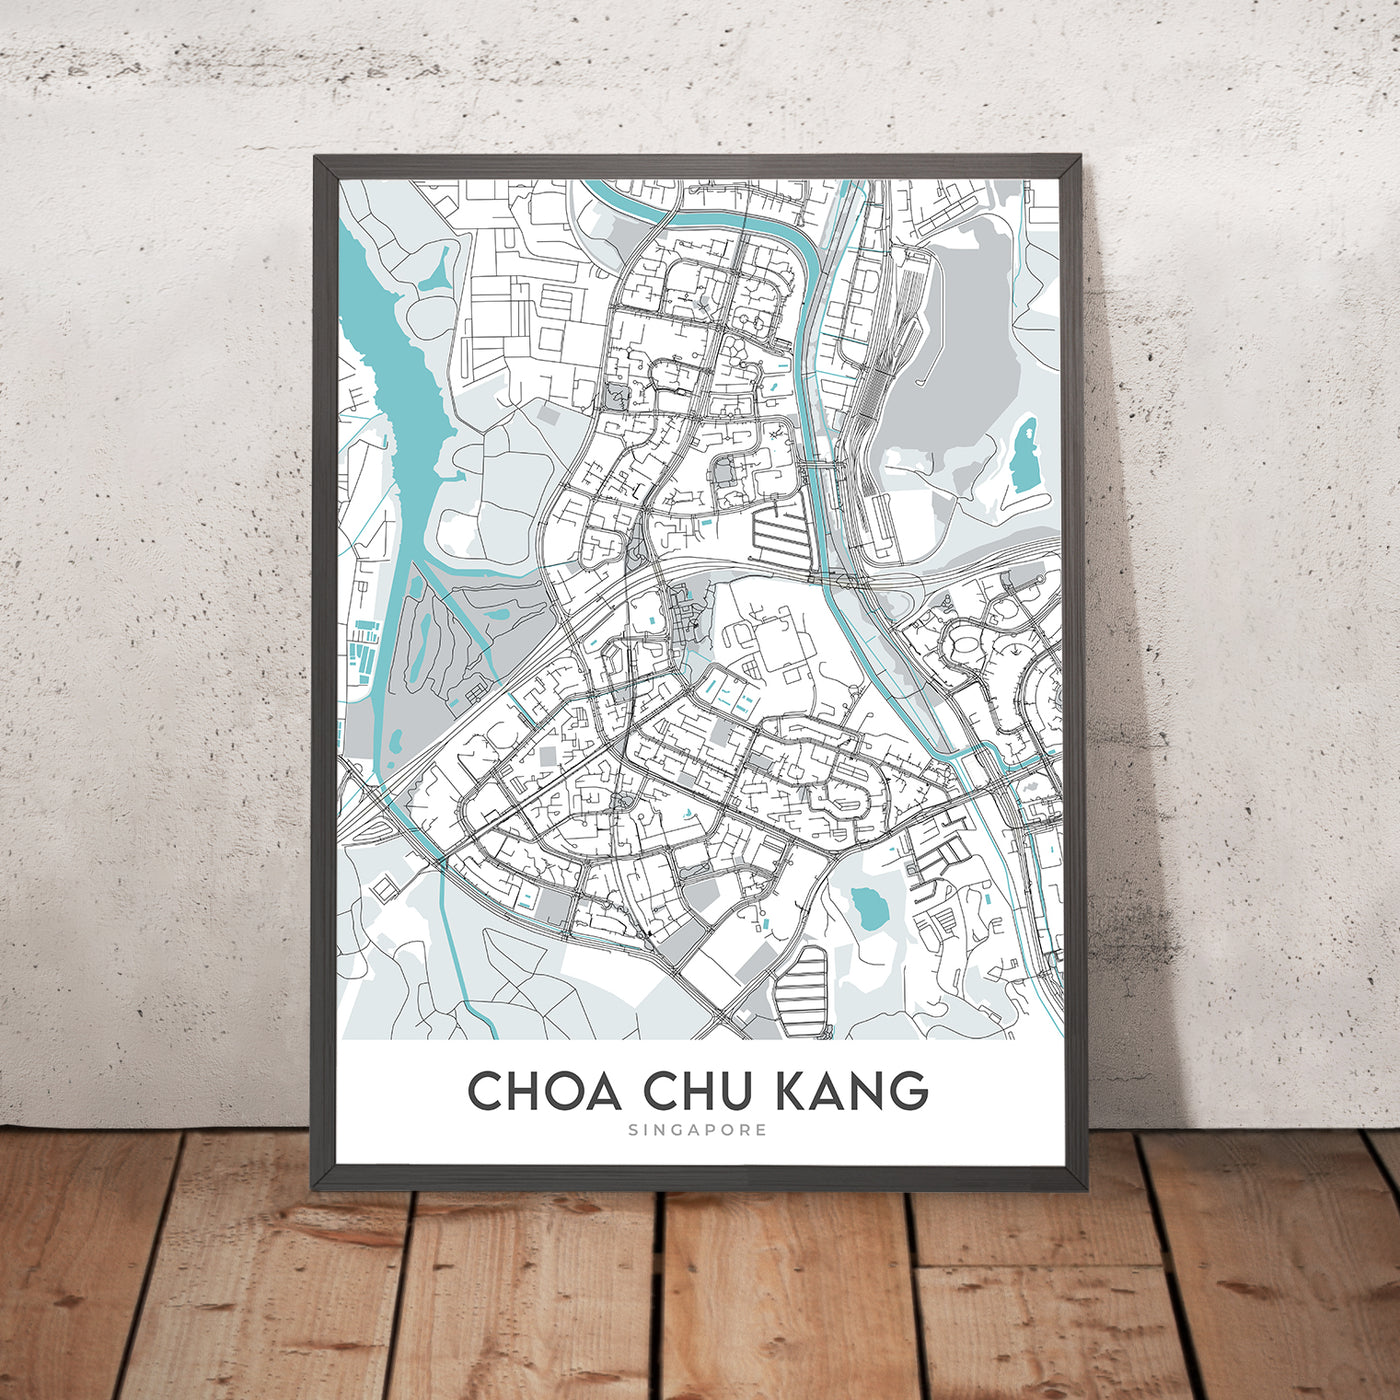 Mapa moderno de la ciudad de Choa Chu Kang, Singapur: estación MRT, centro comercial Lot One, parque CCK, club de golf Warren, centro Teck Whye